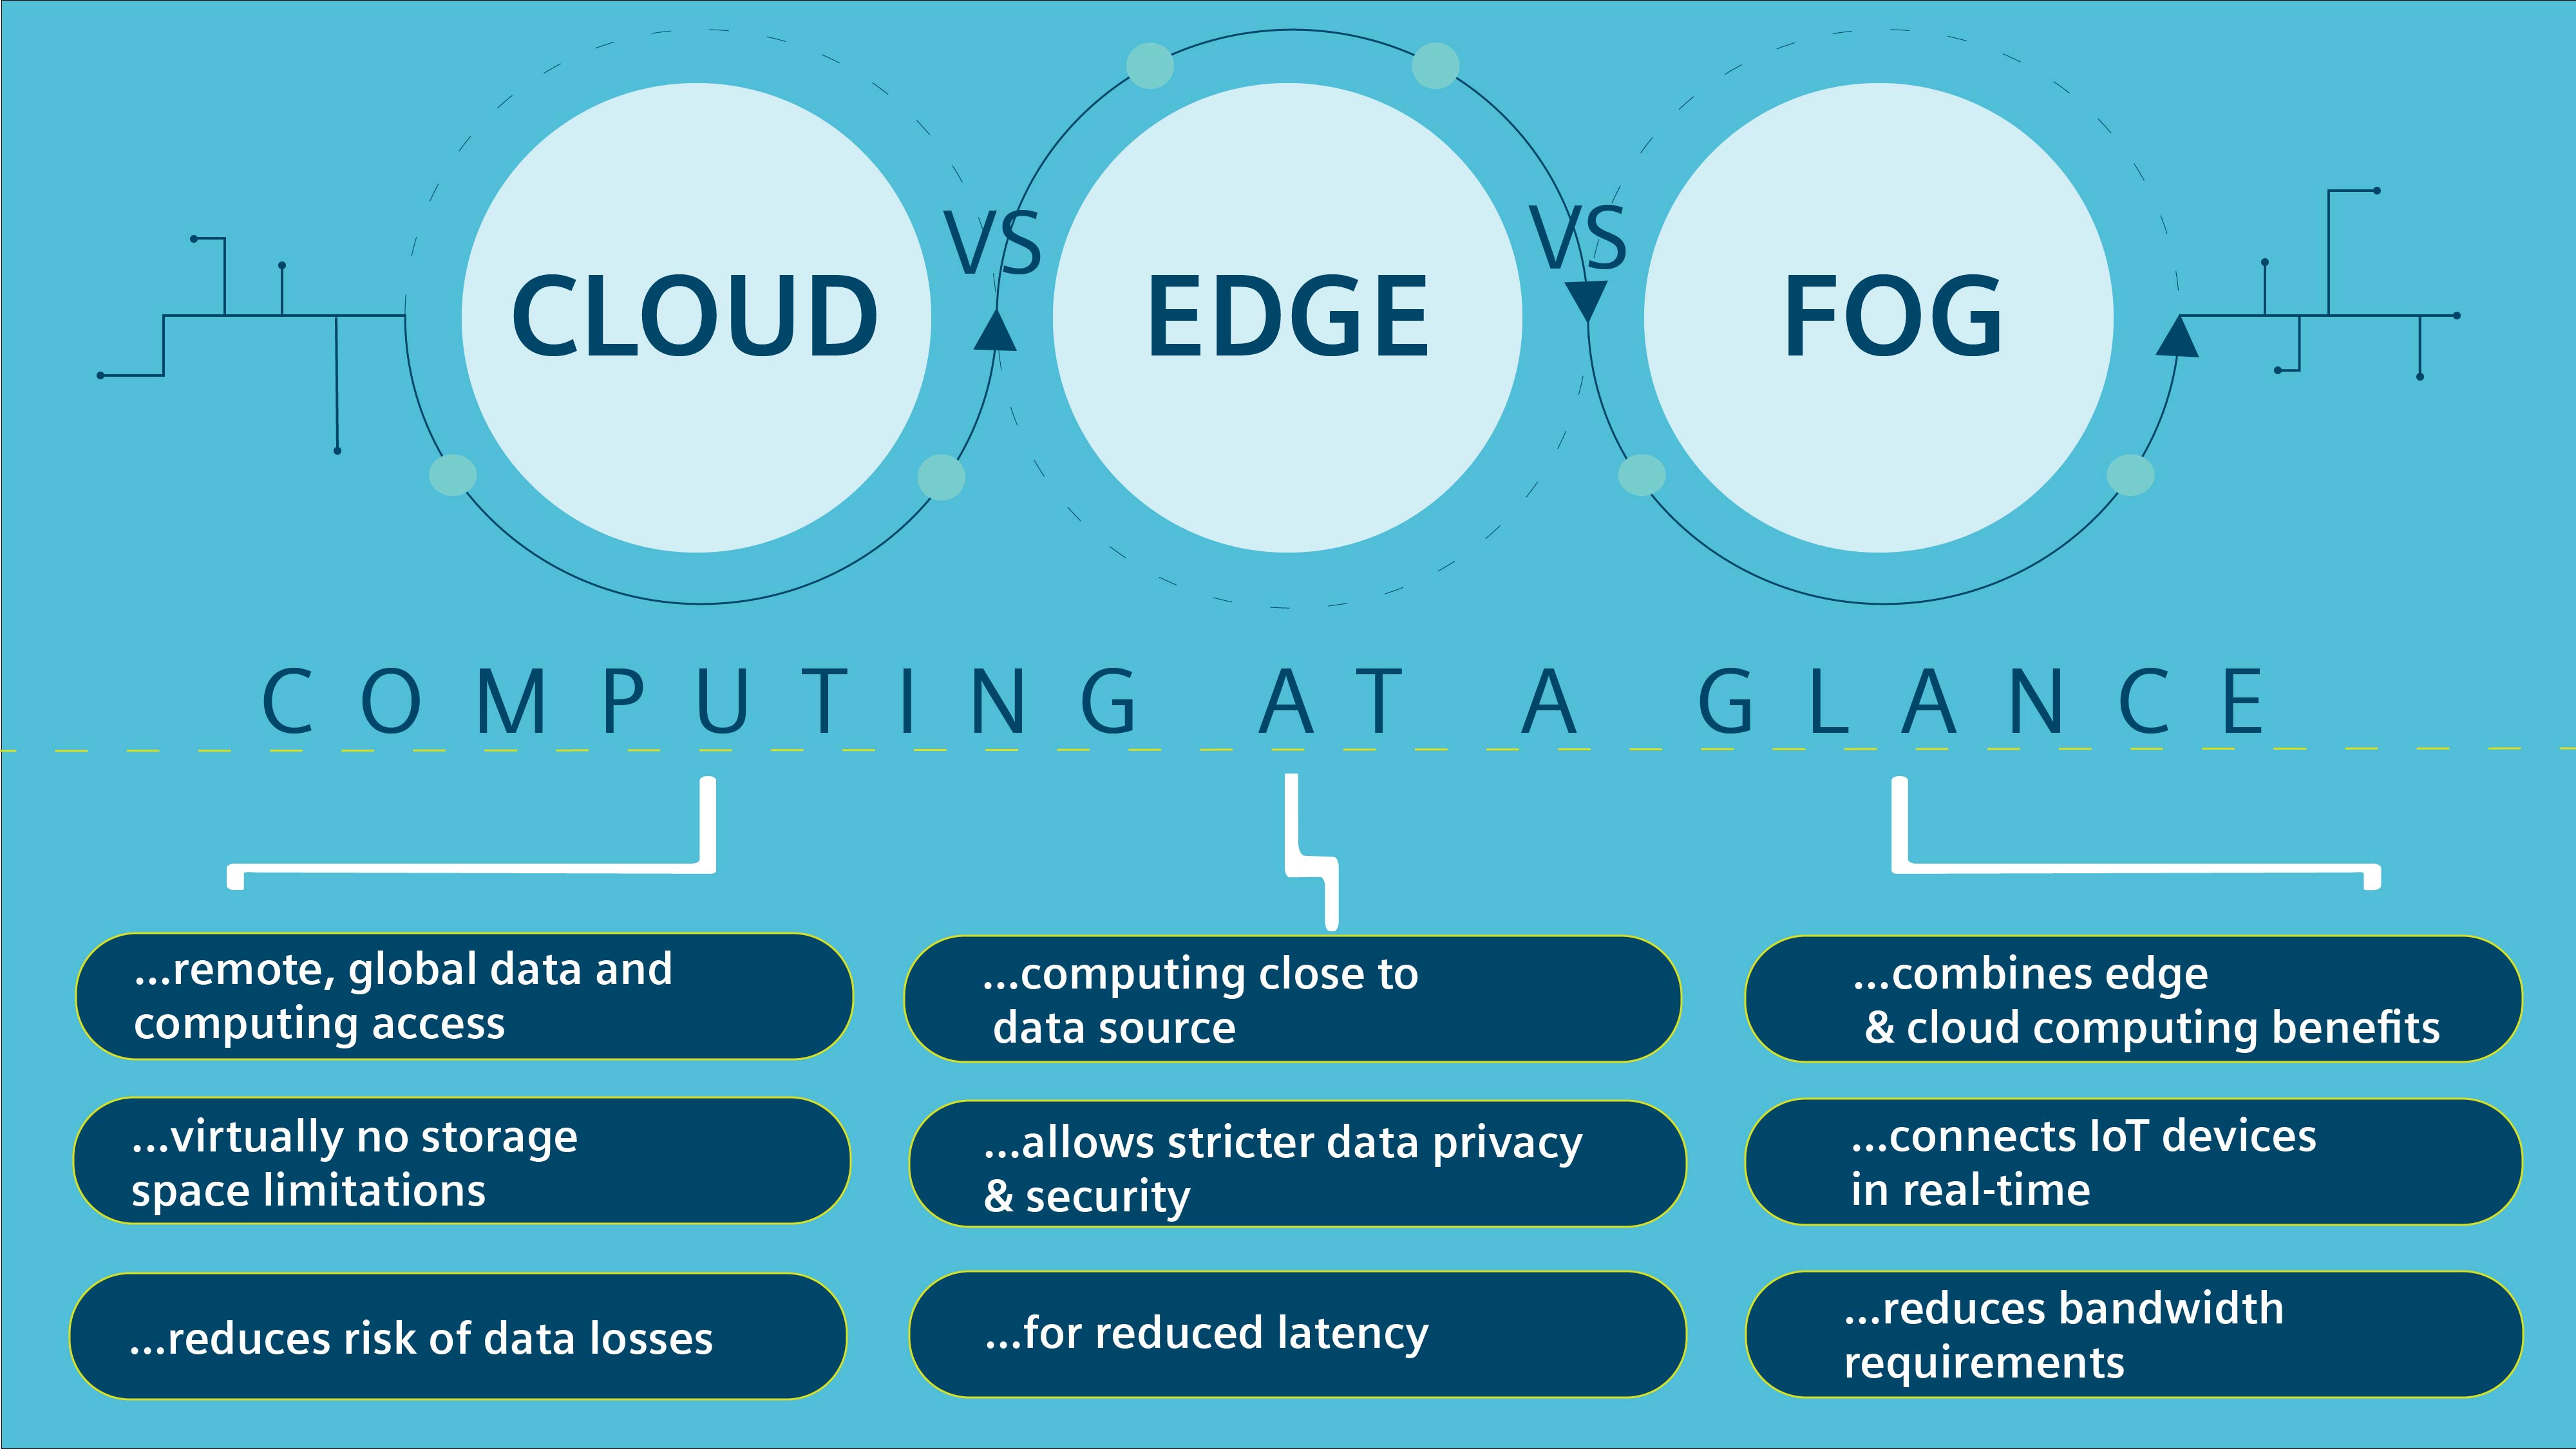 Image of cloud computing vs edge computing